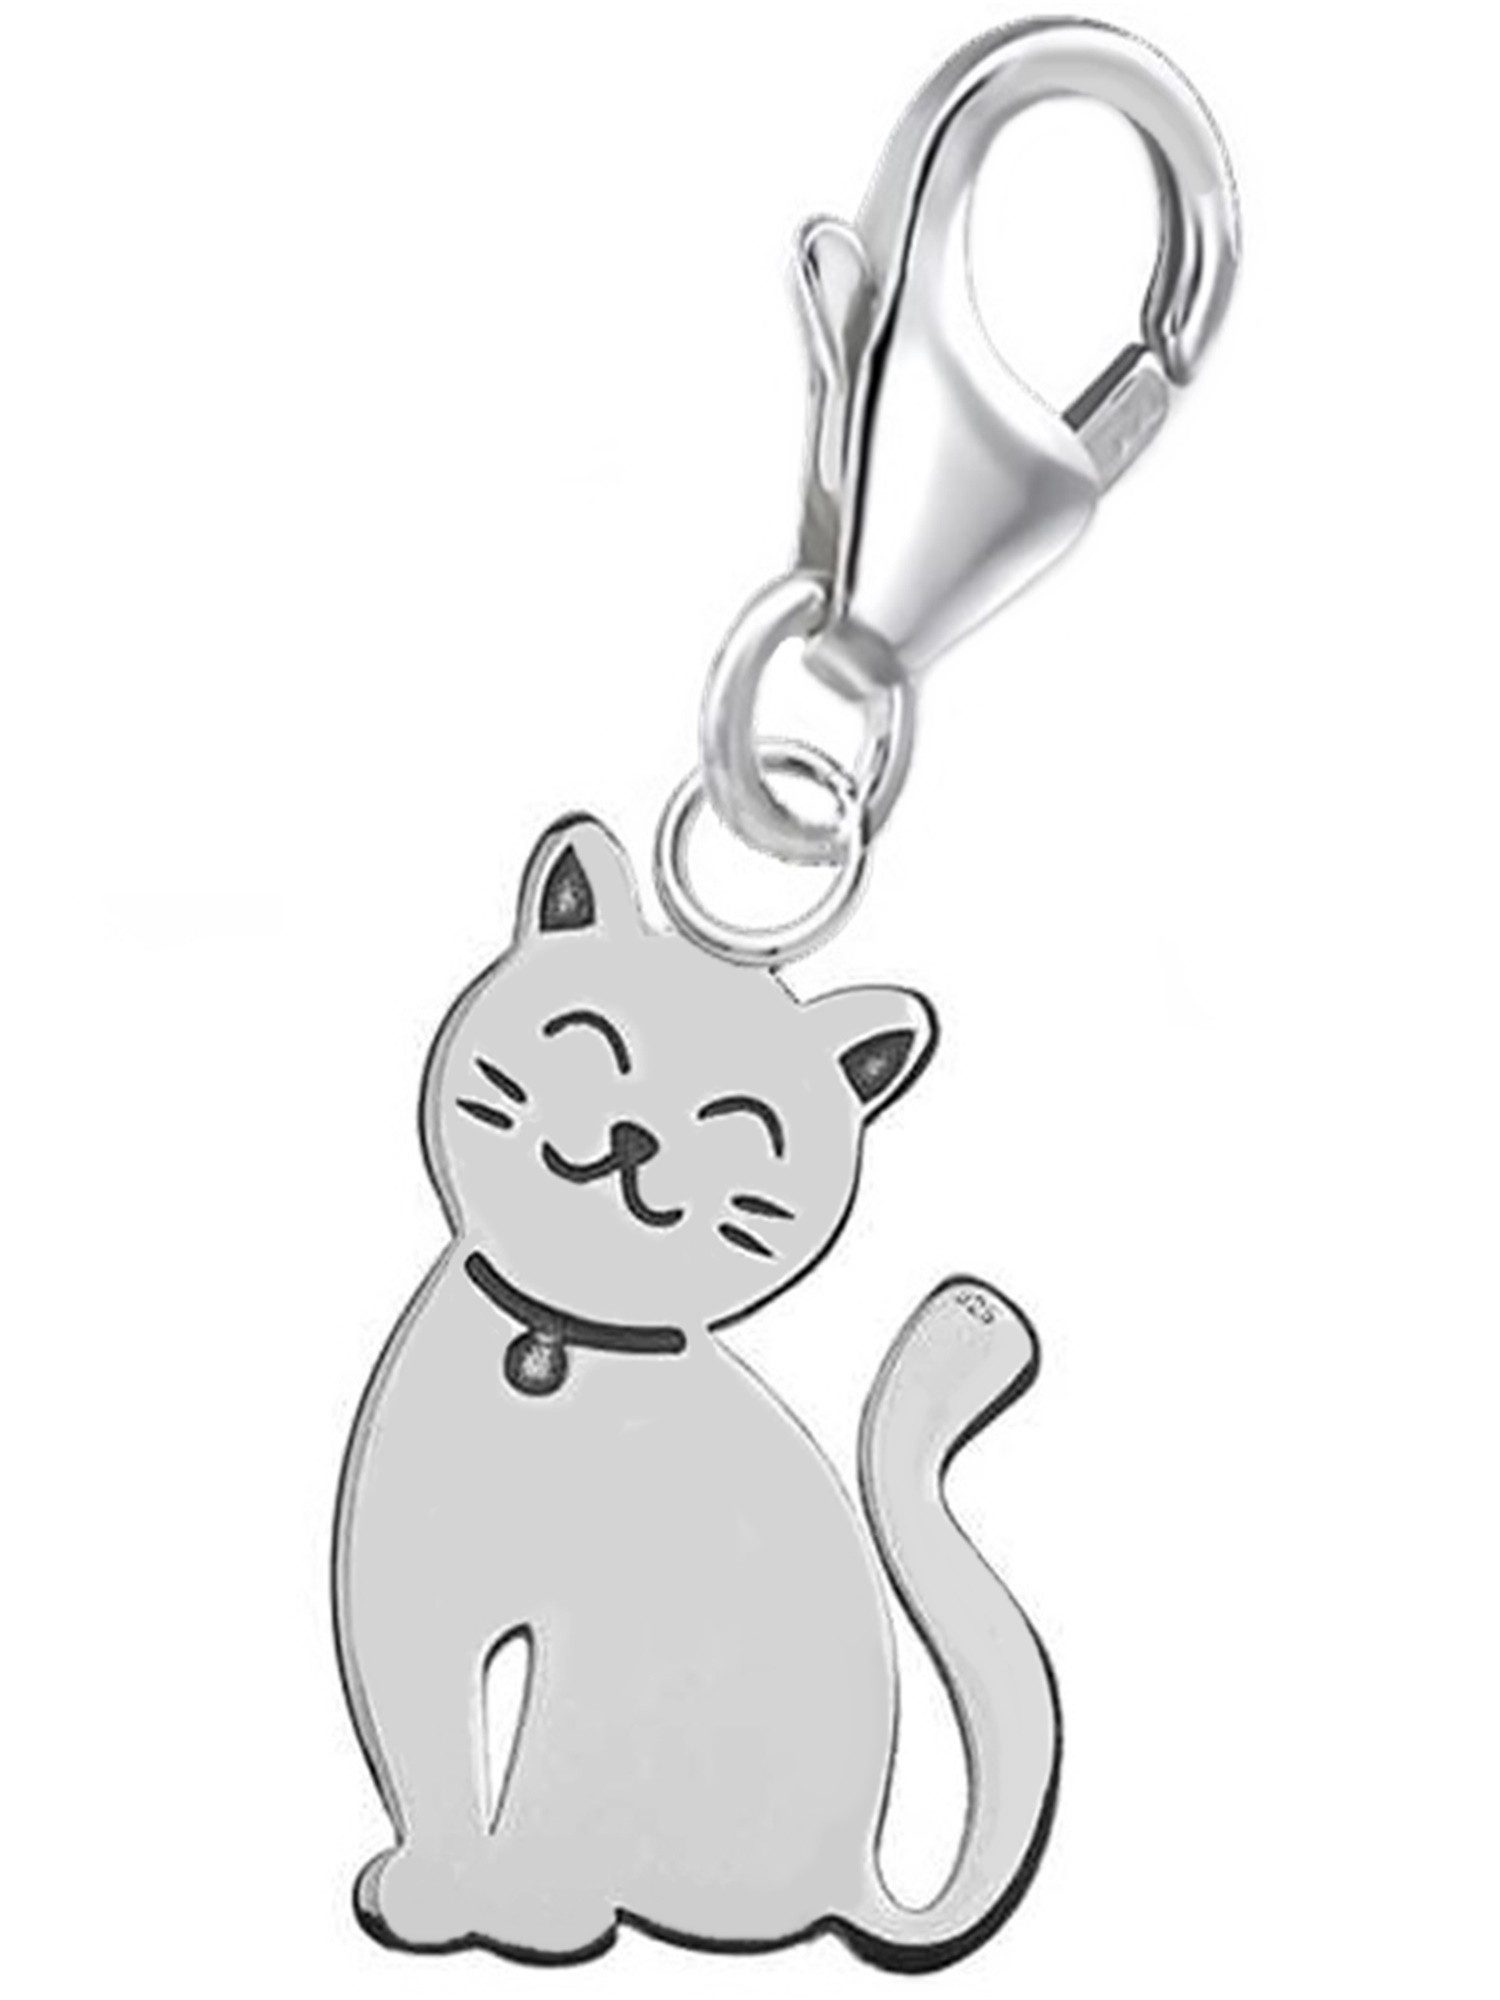 Goldene Hufeisen Charm-Einhänger kleine Katze Karabiner Charm Anhänger für Bettelarmband 925 Silber (inkl. Etui), für Gliederarmband oder Halskette